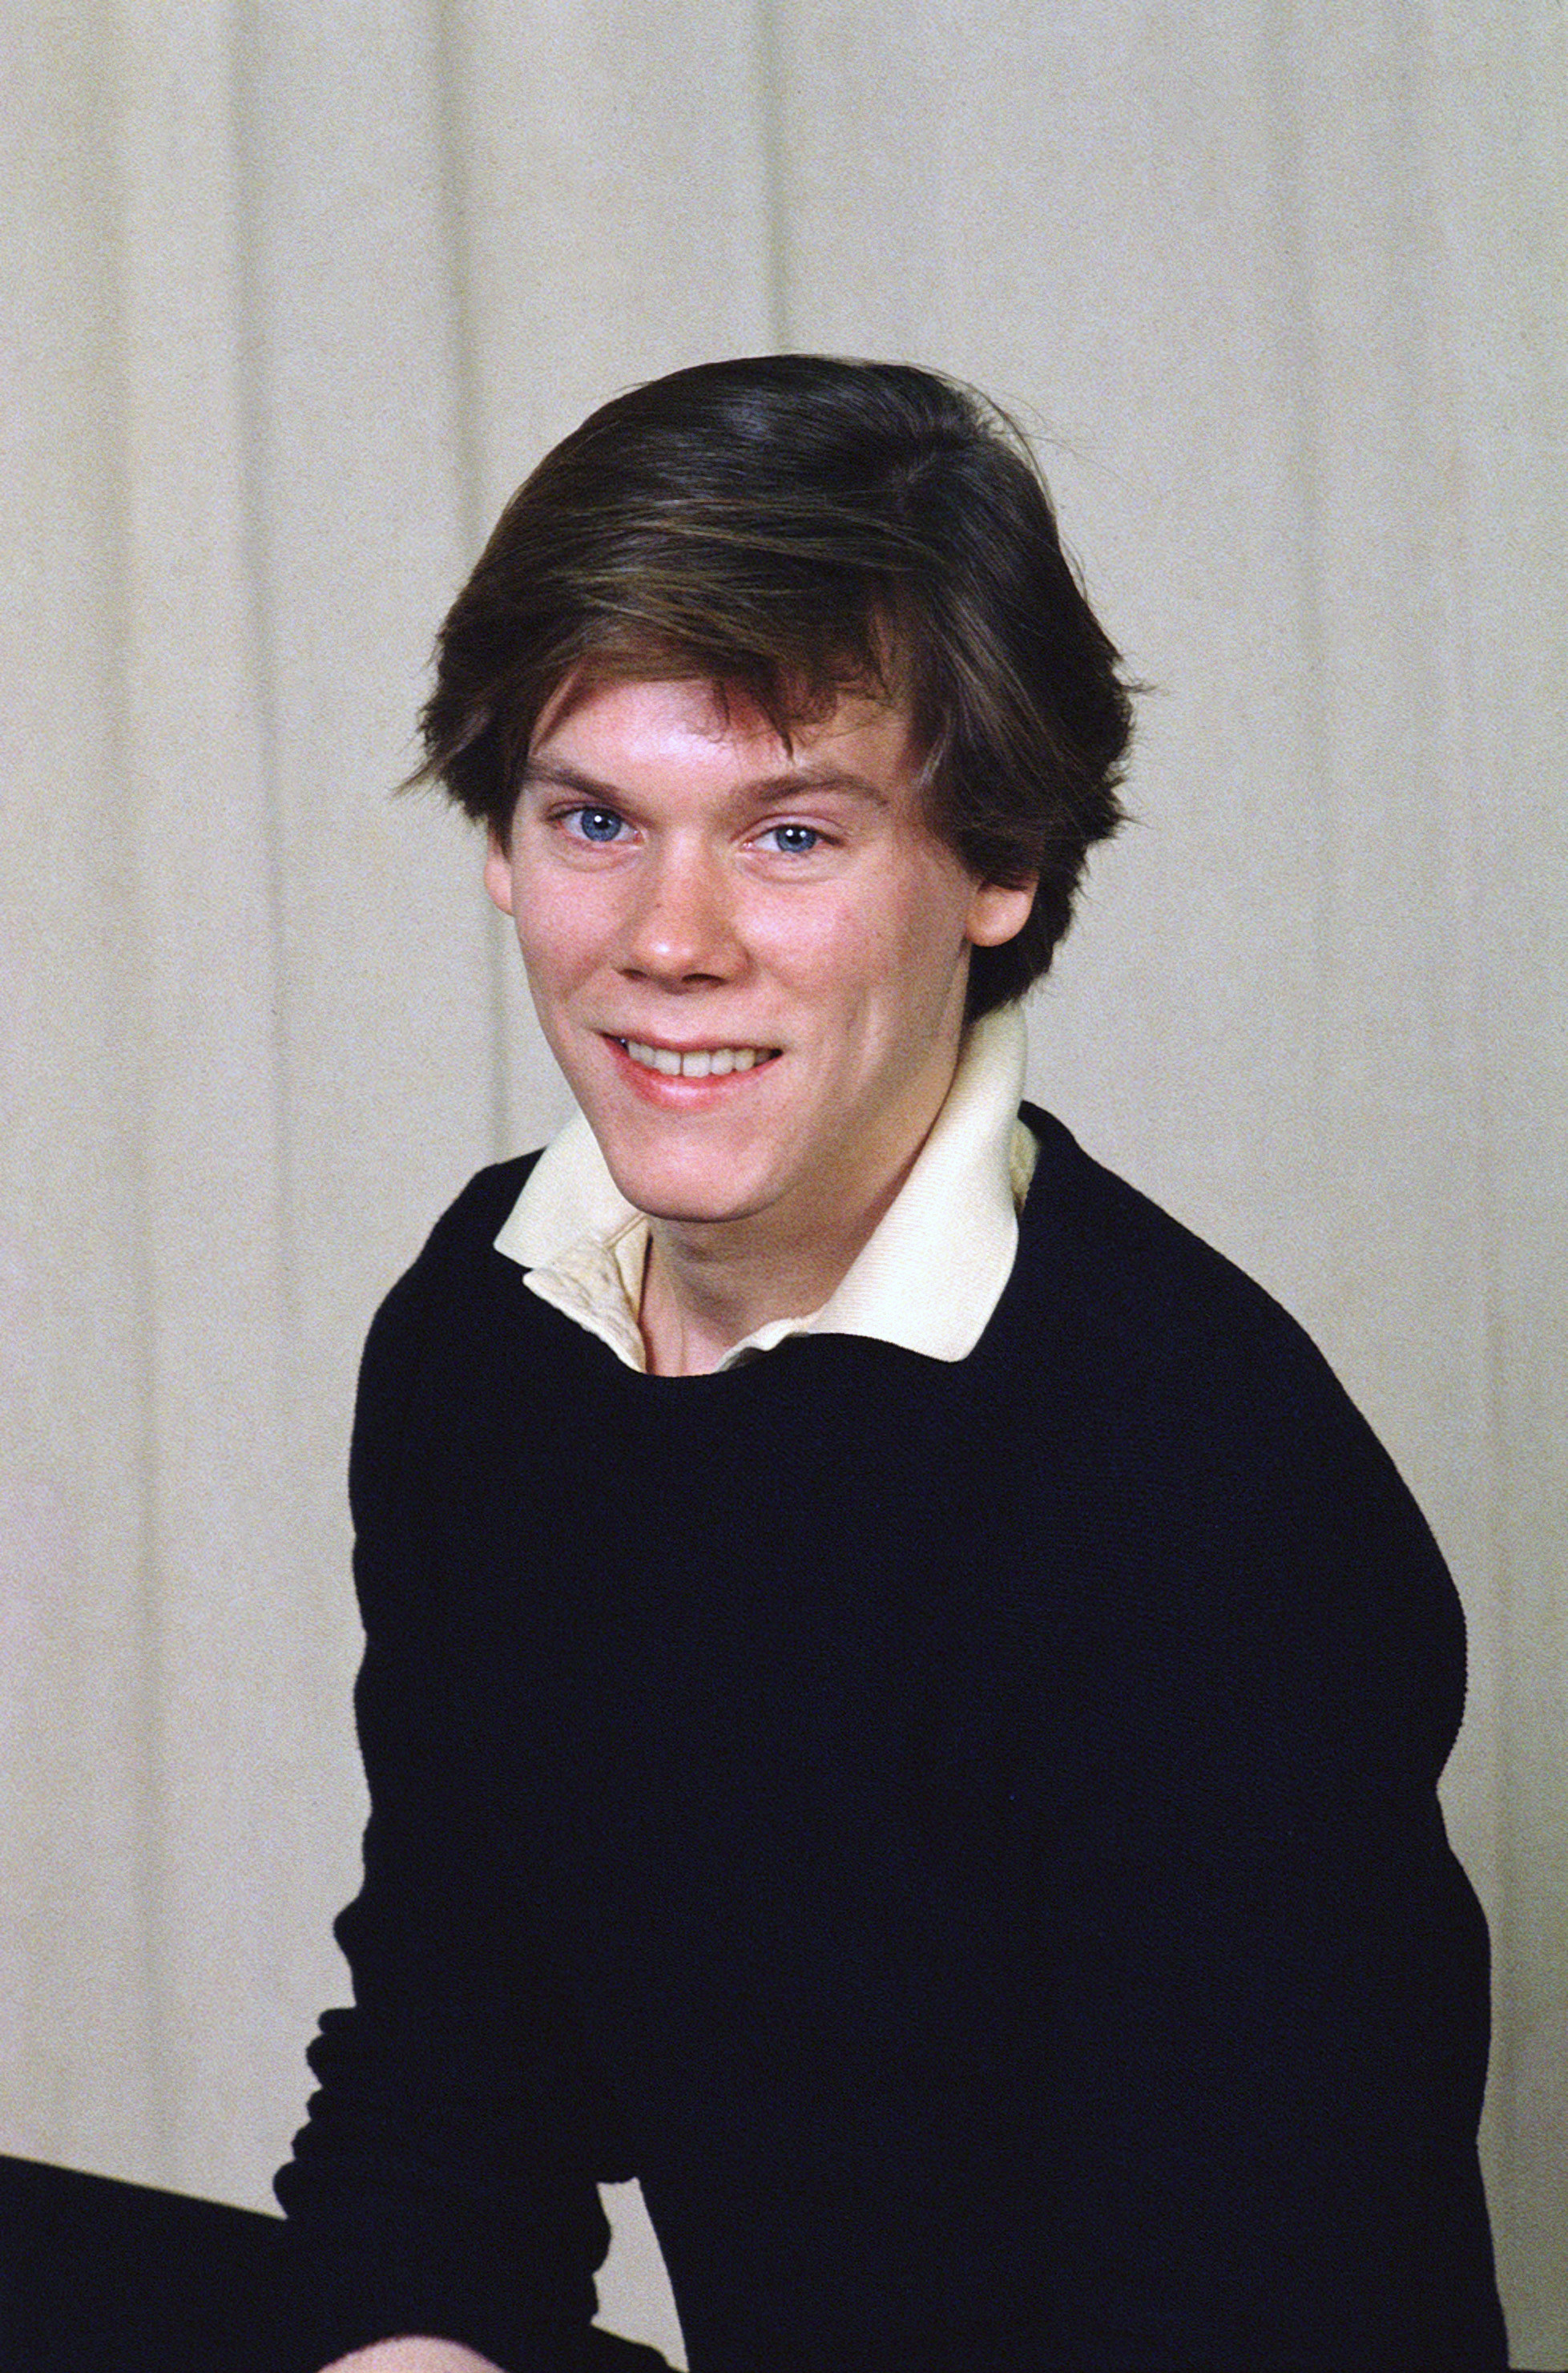 Le célèbre acteur pose pour une photo, vers 1980 | Source : Getty Images